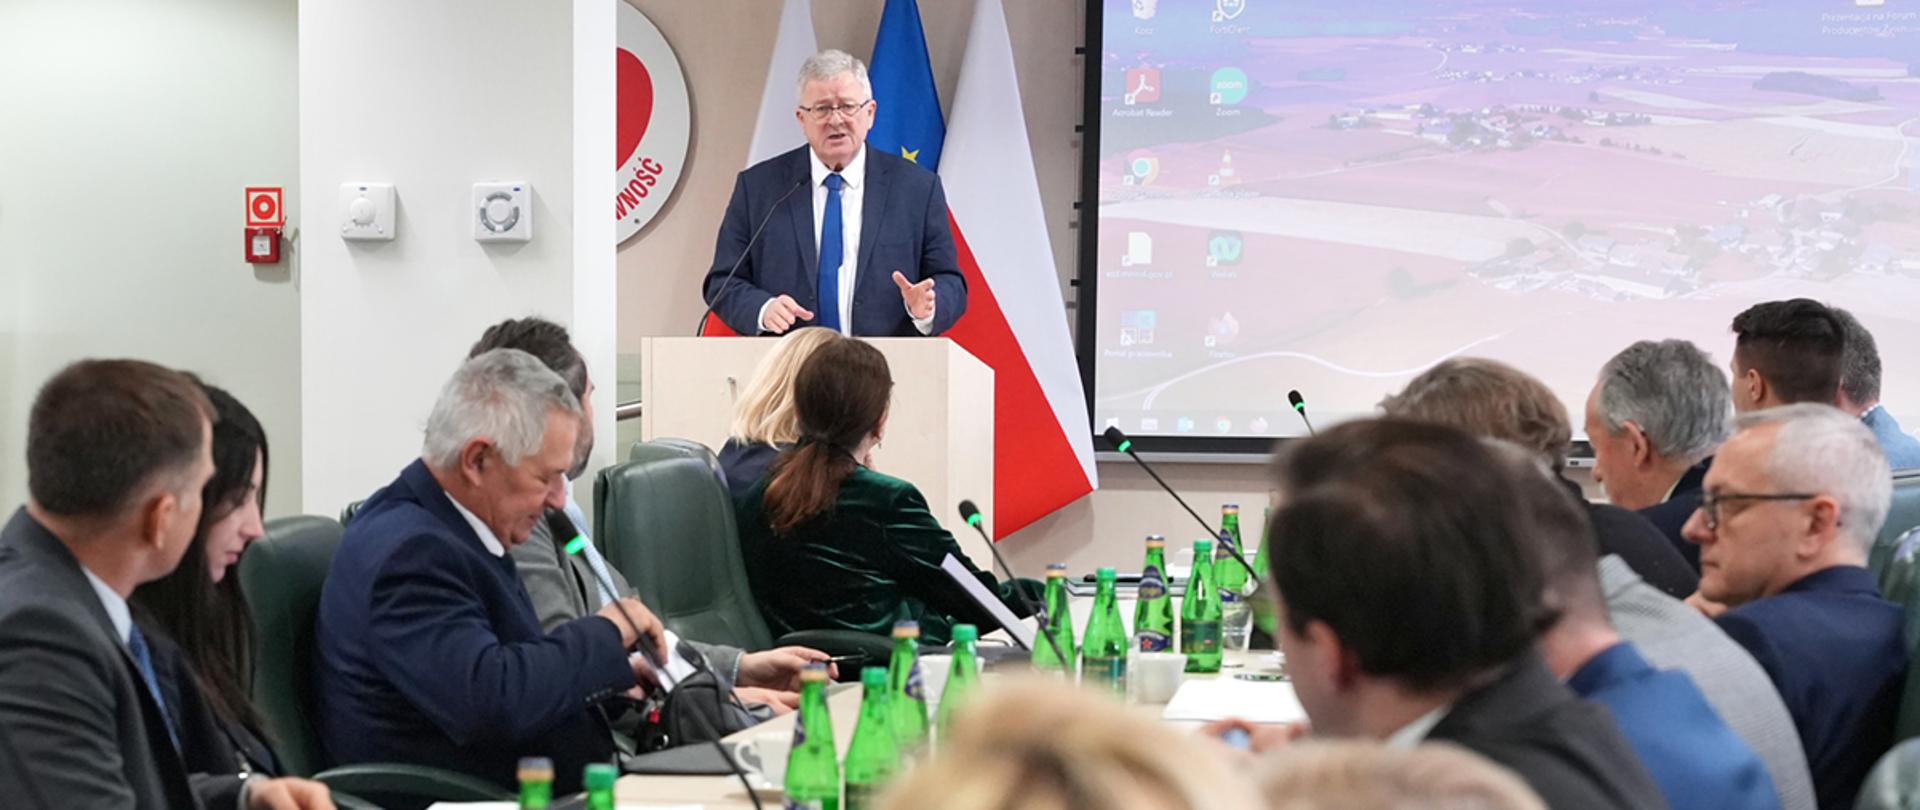 Minister Czesław Siekierski podczas przemówienia (fot. MRiRW)